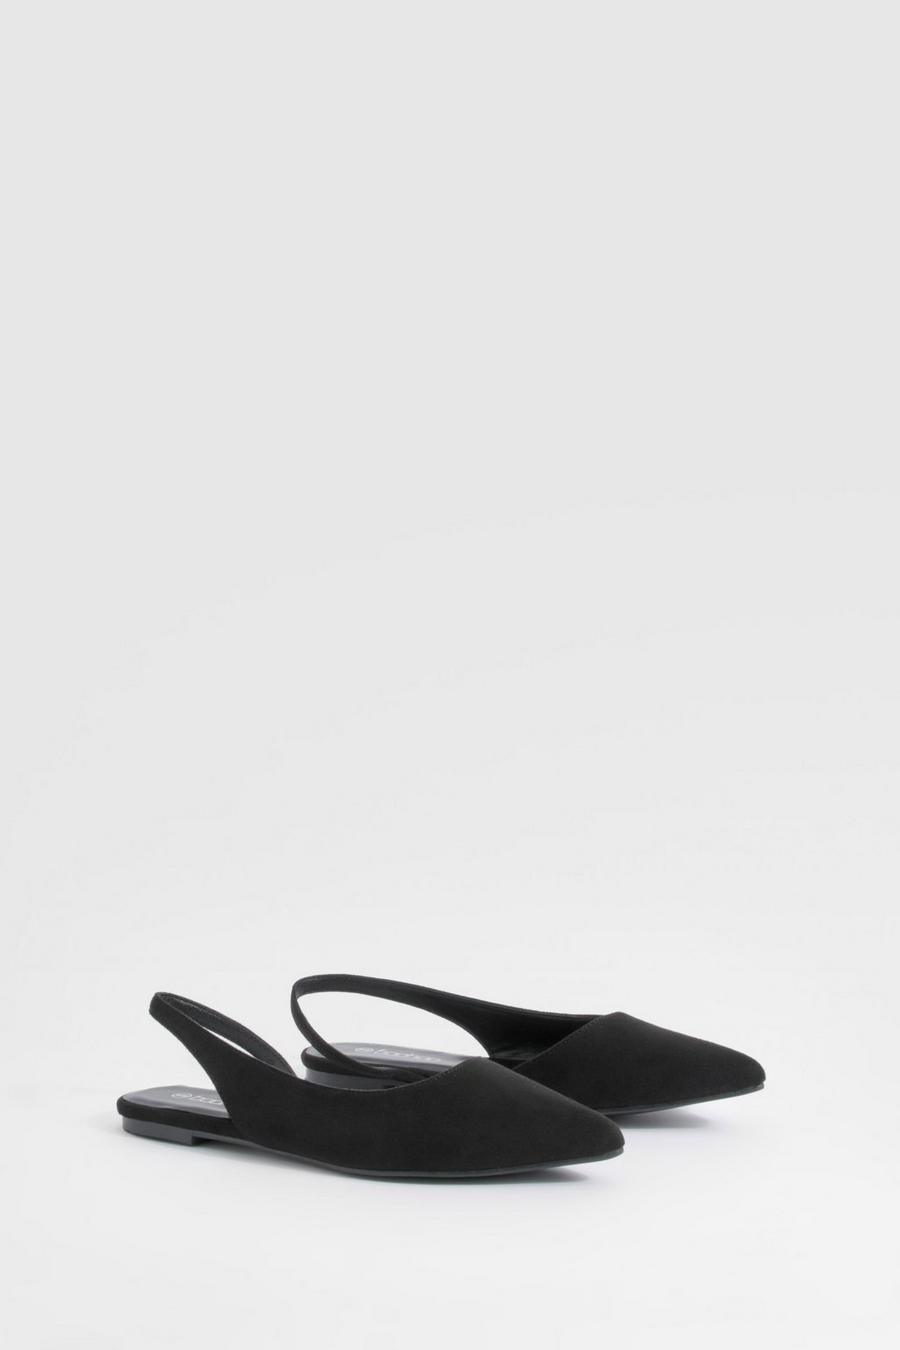 Zapatos planos de ante sintético sin talón, Black image number 1